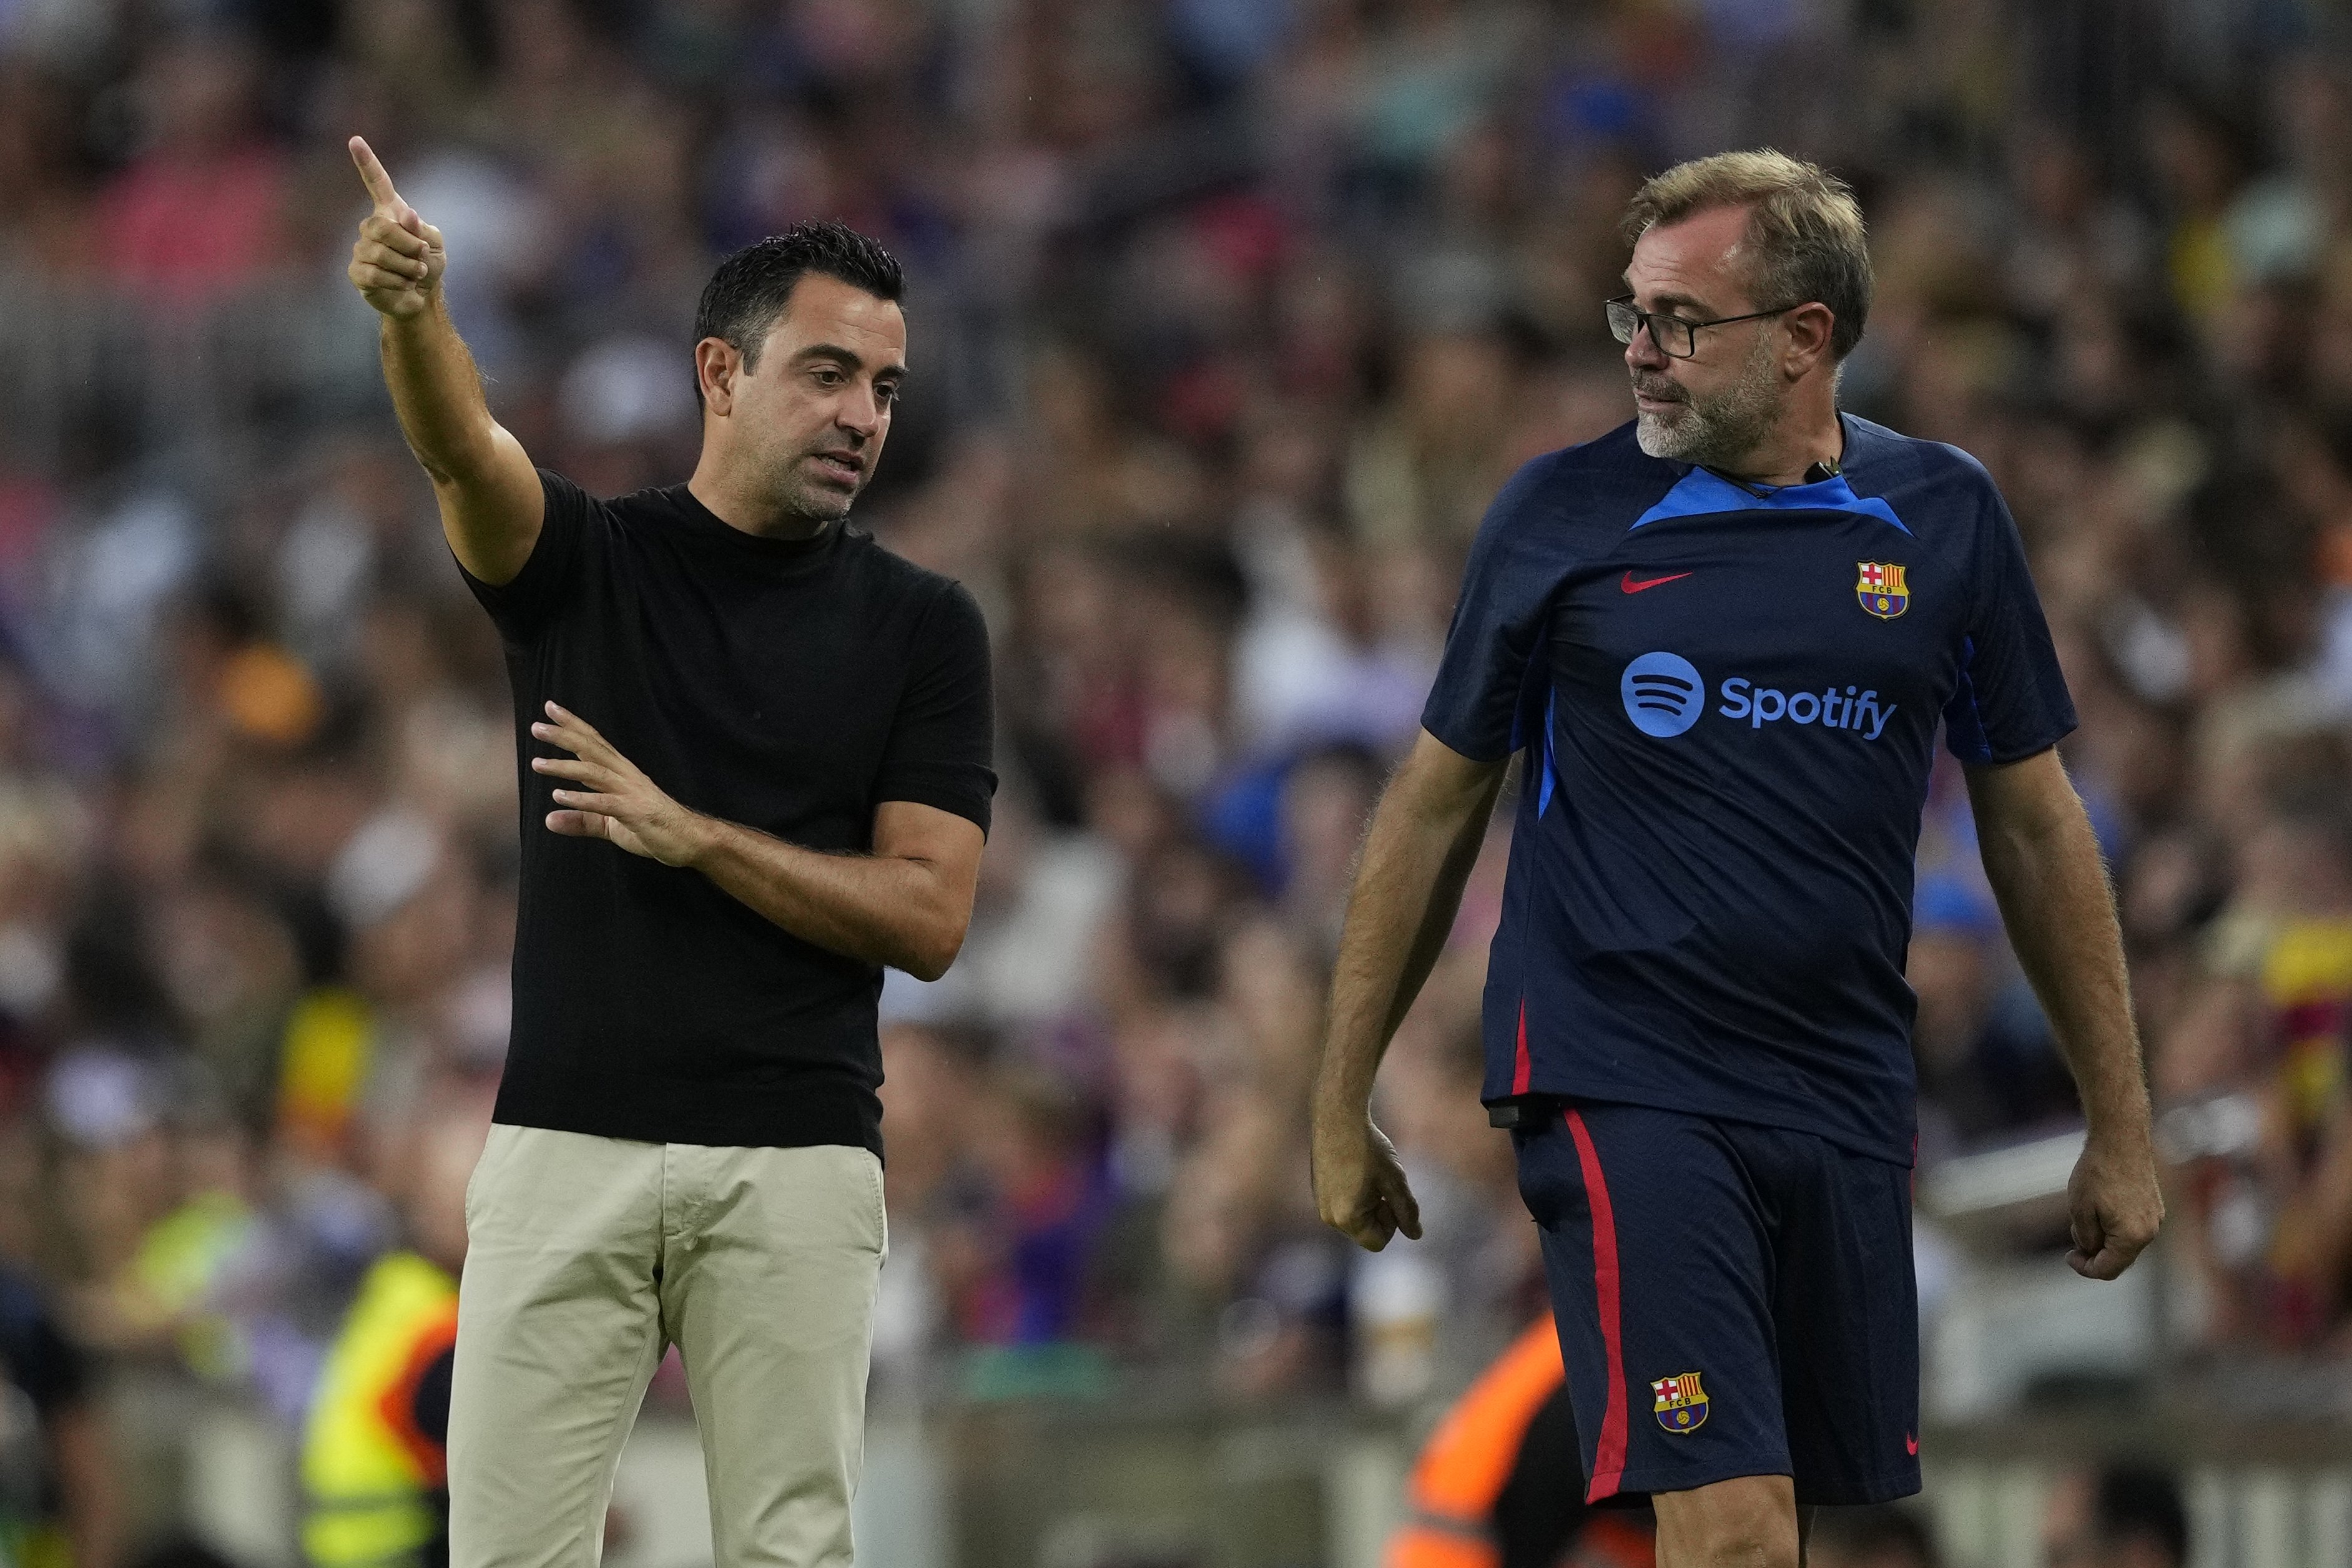 De admirar a Xavi Hernández a prácticamente no hablarle y convertir la relación en el Barça en tóxica